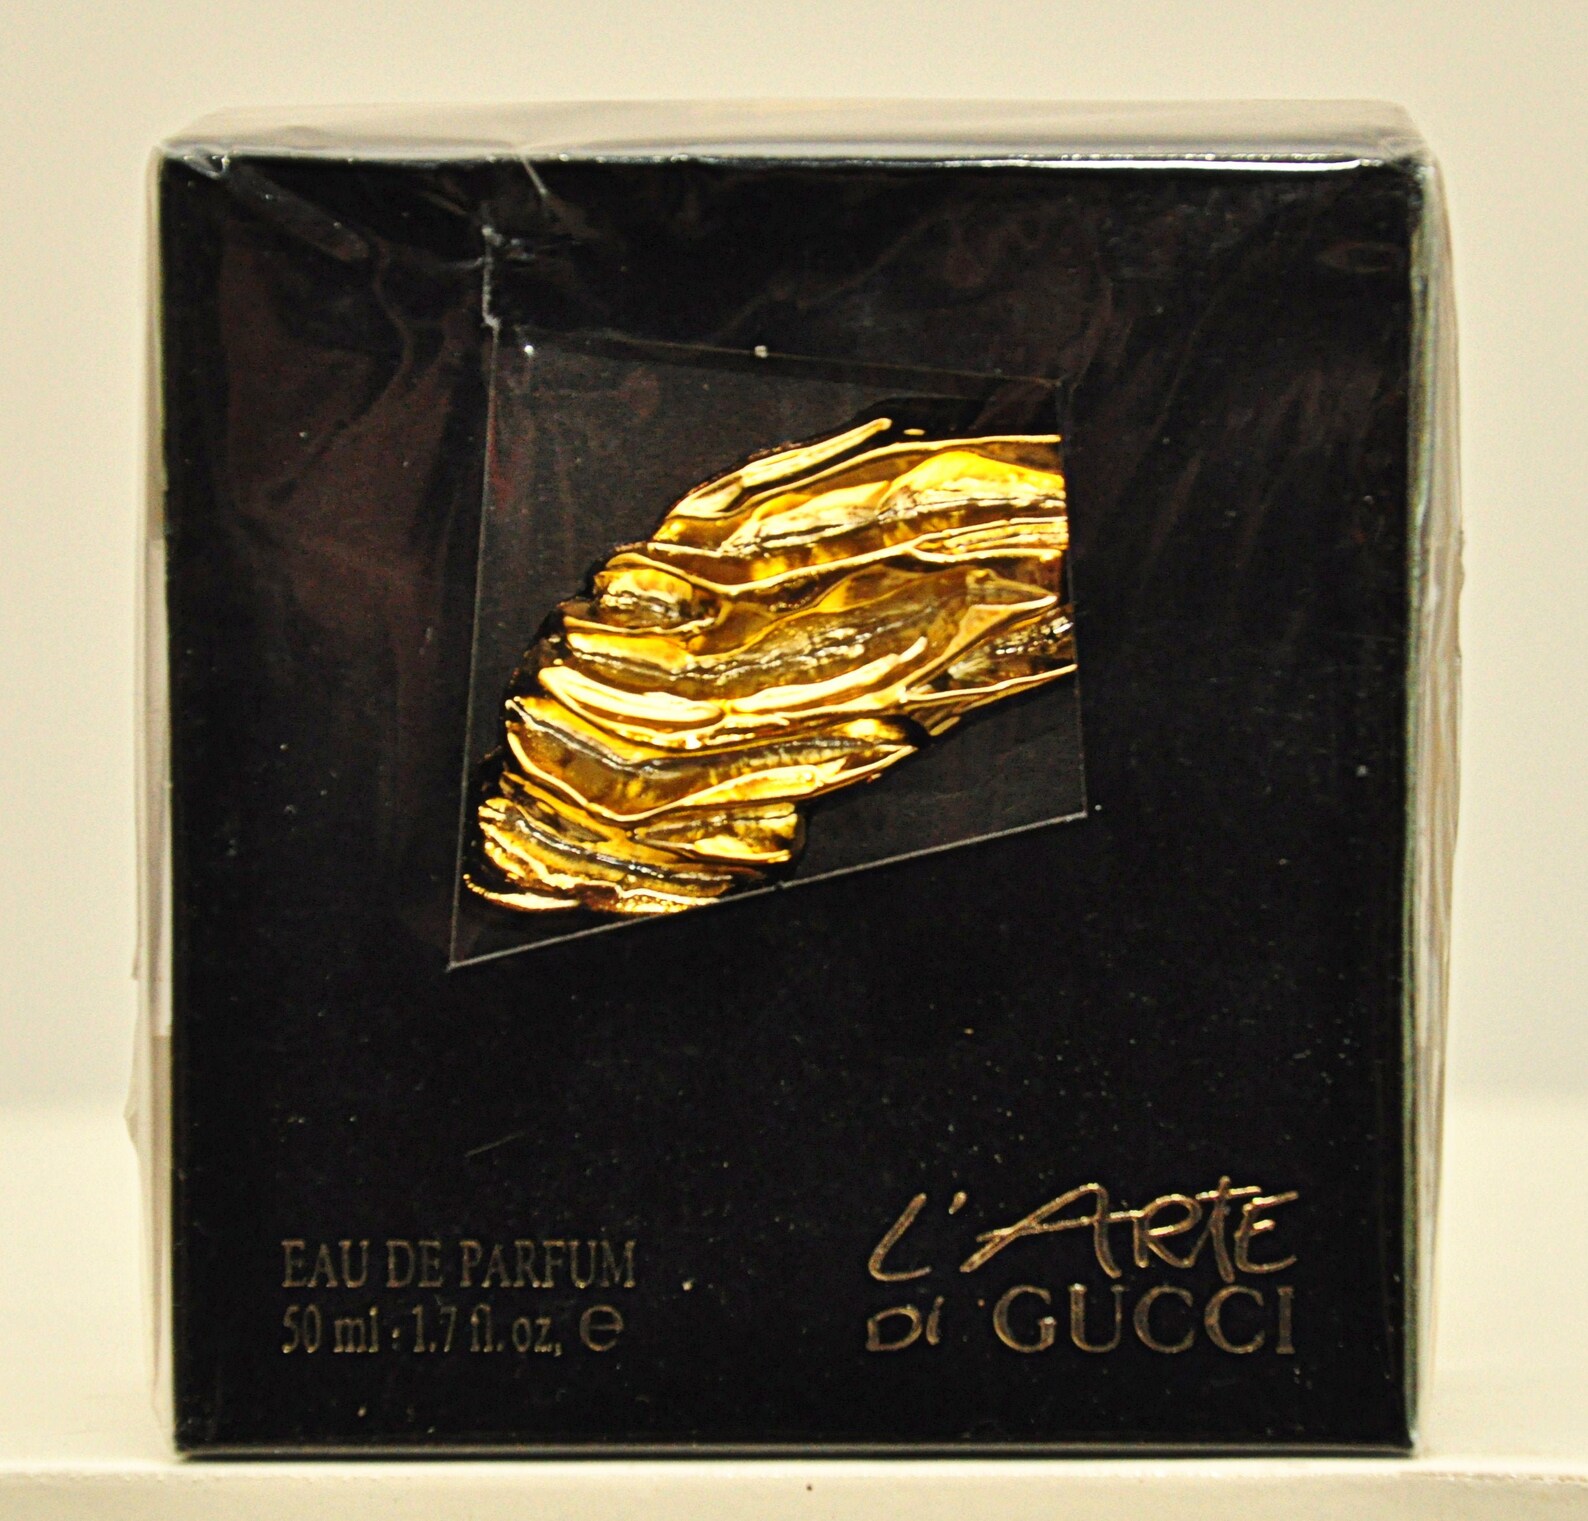 Gucci L'arte Di Gucci Eau De Parfum Edp 50ml 1.7 Fl. Oz. - Etsy